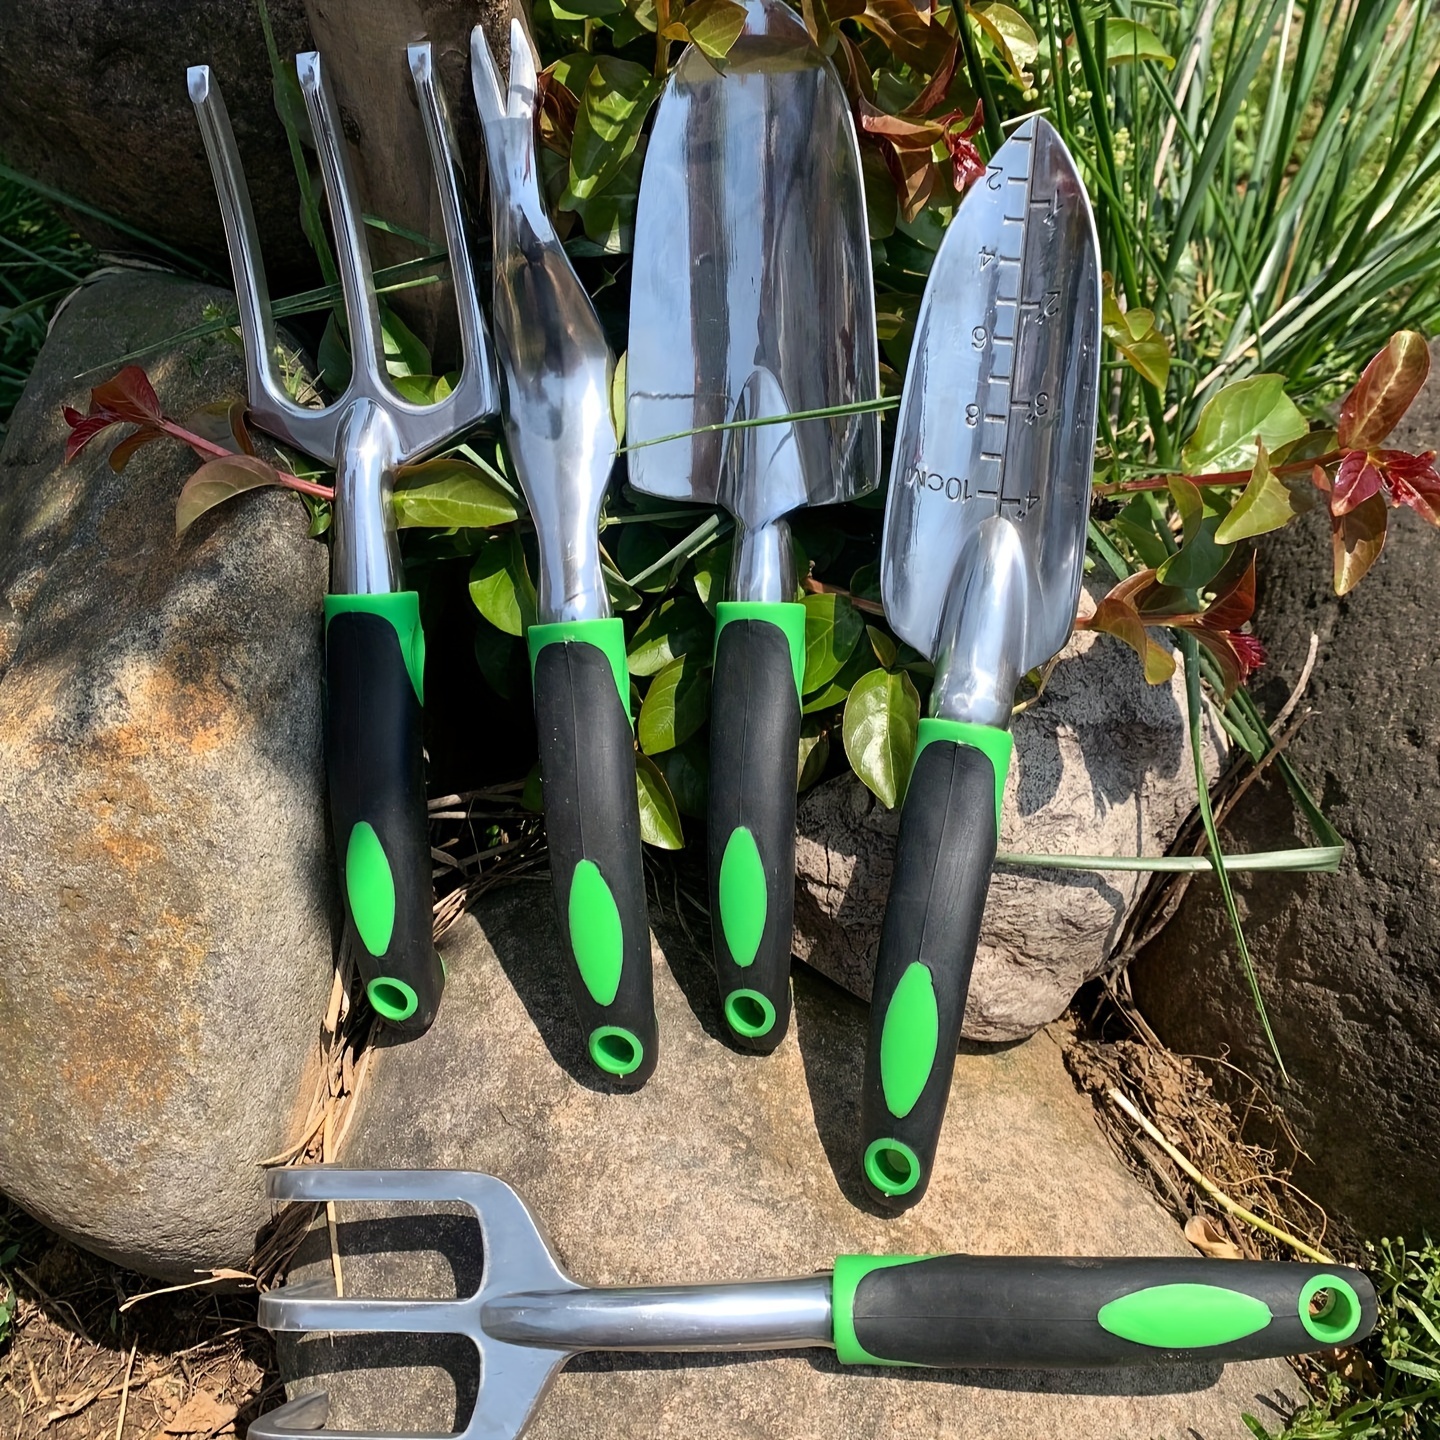 Juego de herramientas de jardín, juego de herramientas de jardinería de  acero inoxidable resistente, con agarre antideslizante, bolsa de